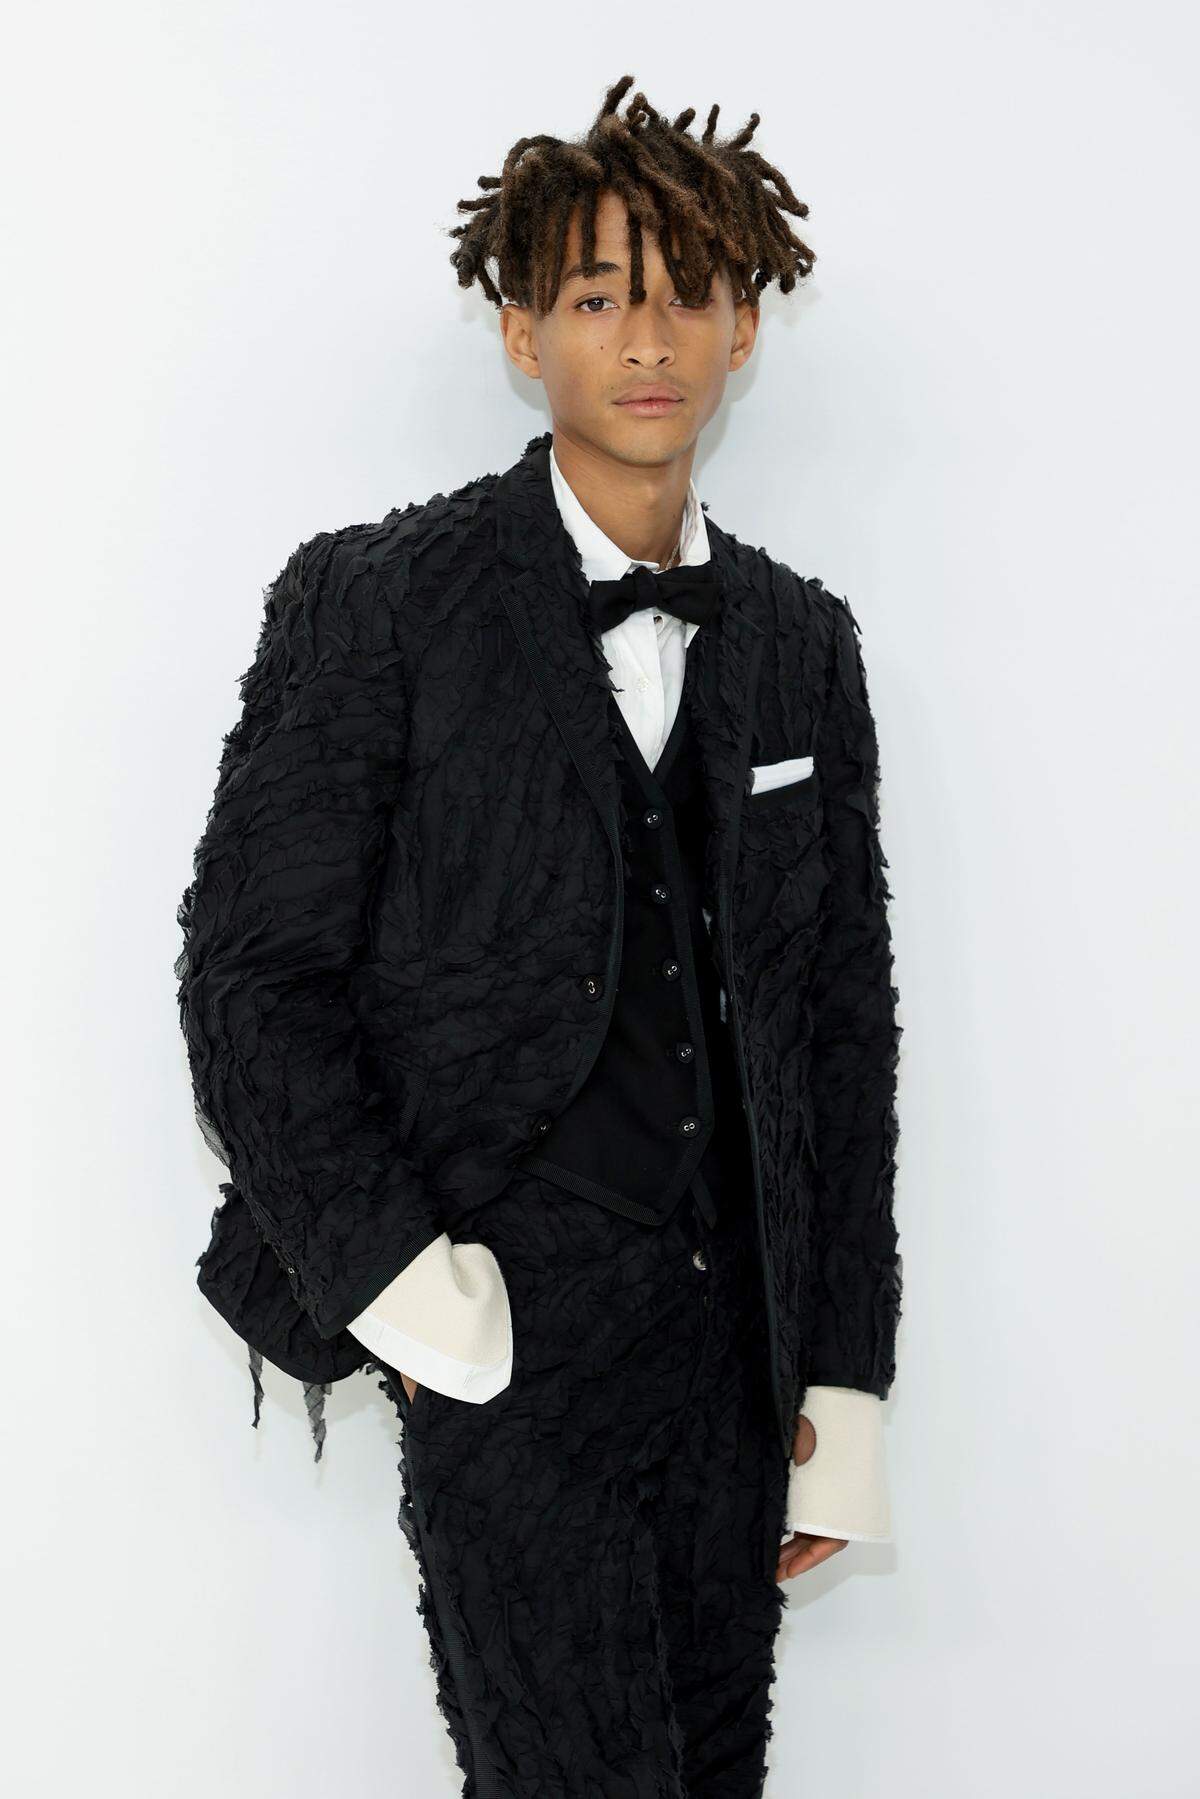 Schauspieler und Musiker Jaden Smith in einem Anzug mit Tüllnähten und überlangen Hemdärmeln. Designt wurde der Look von Thom Browne.